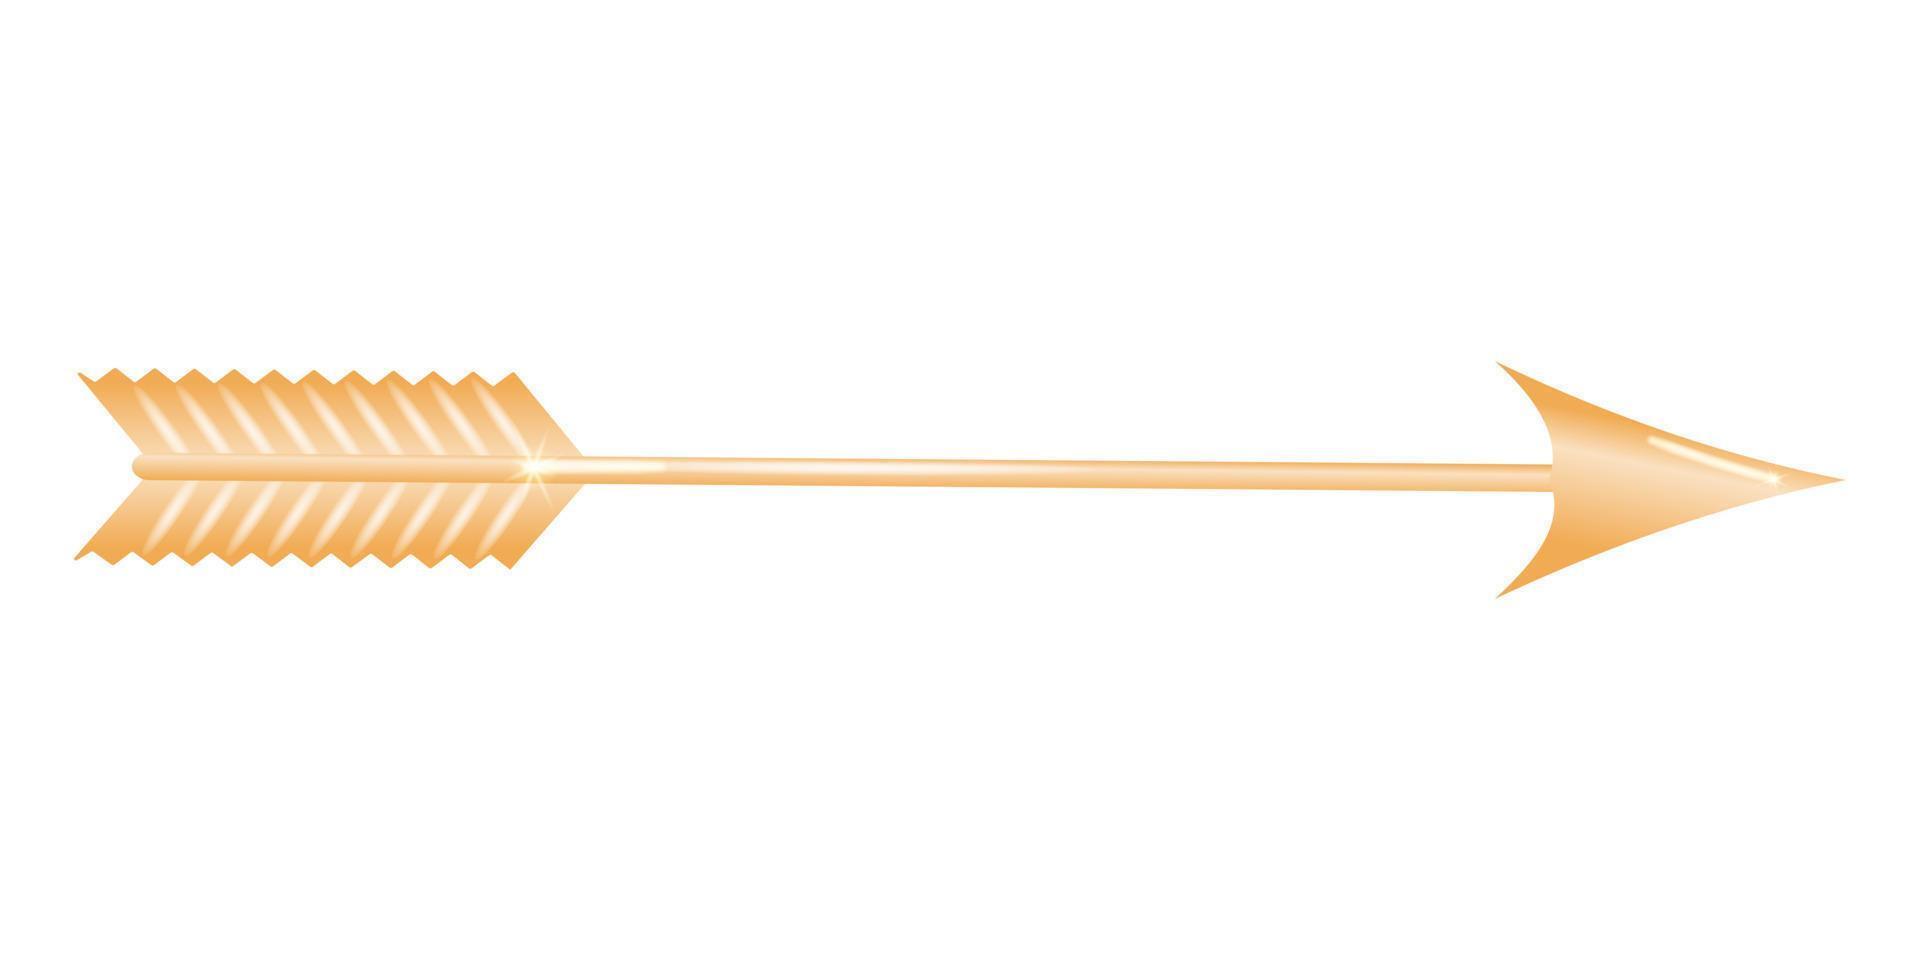 d'oro freccia 3d. albero affilato a il davanti e con piume o alette a il Indietro, tiro a partire dal un' arco come un' arma o per sport. vettore illustrazione.